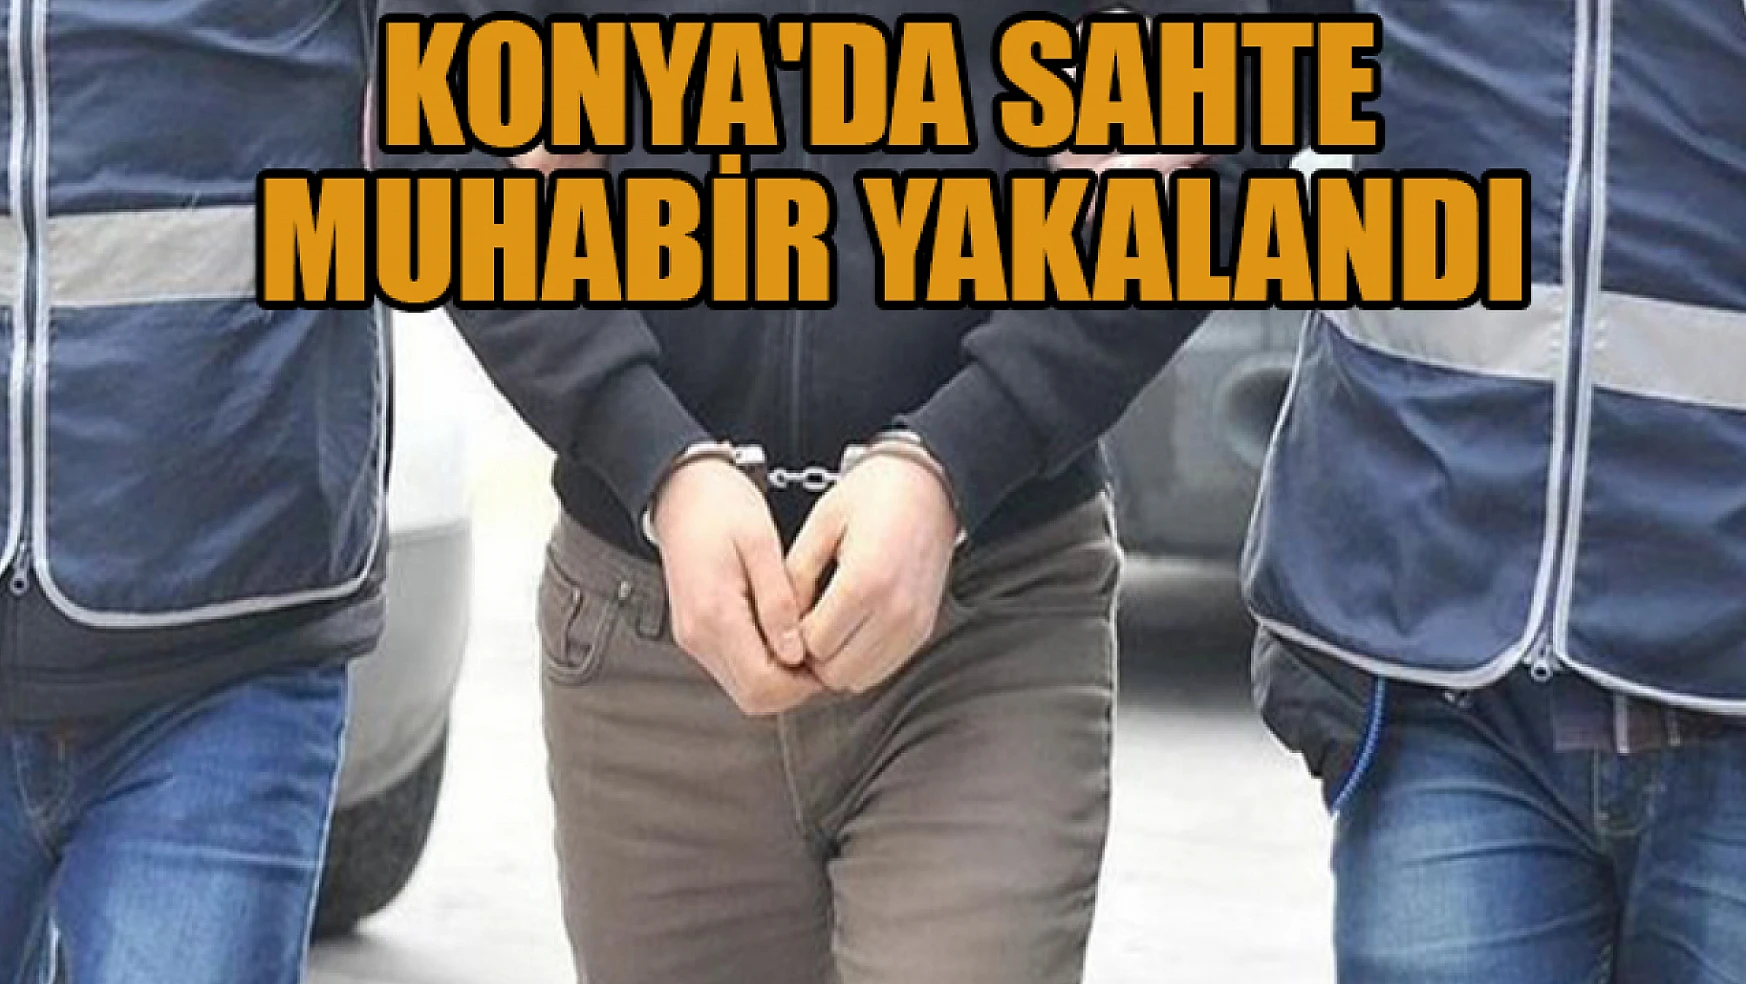  Konya'da kendisini 'polis-adliye muhabiri' olarak tanıtan kişi yakalandı